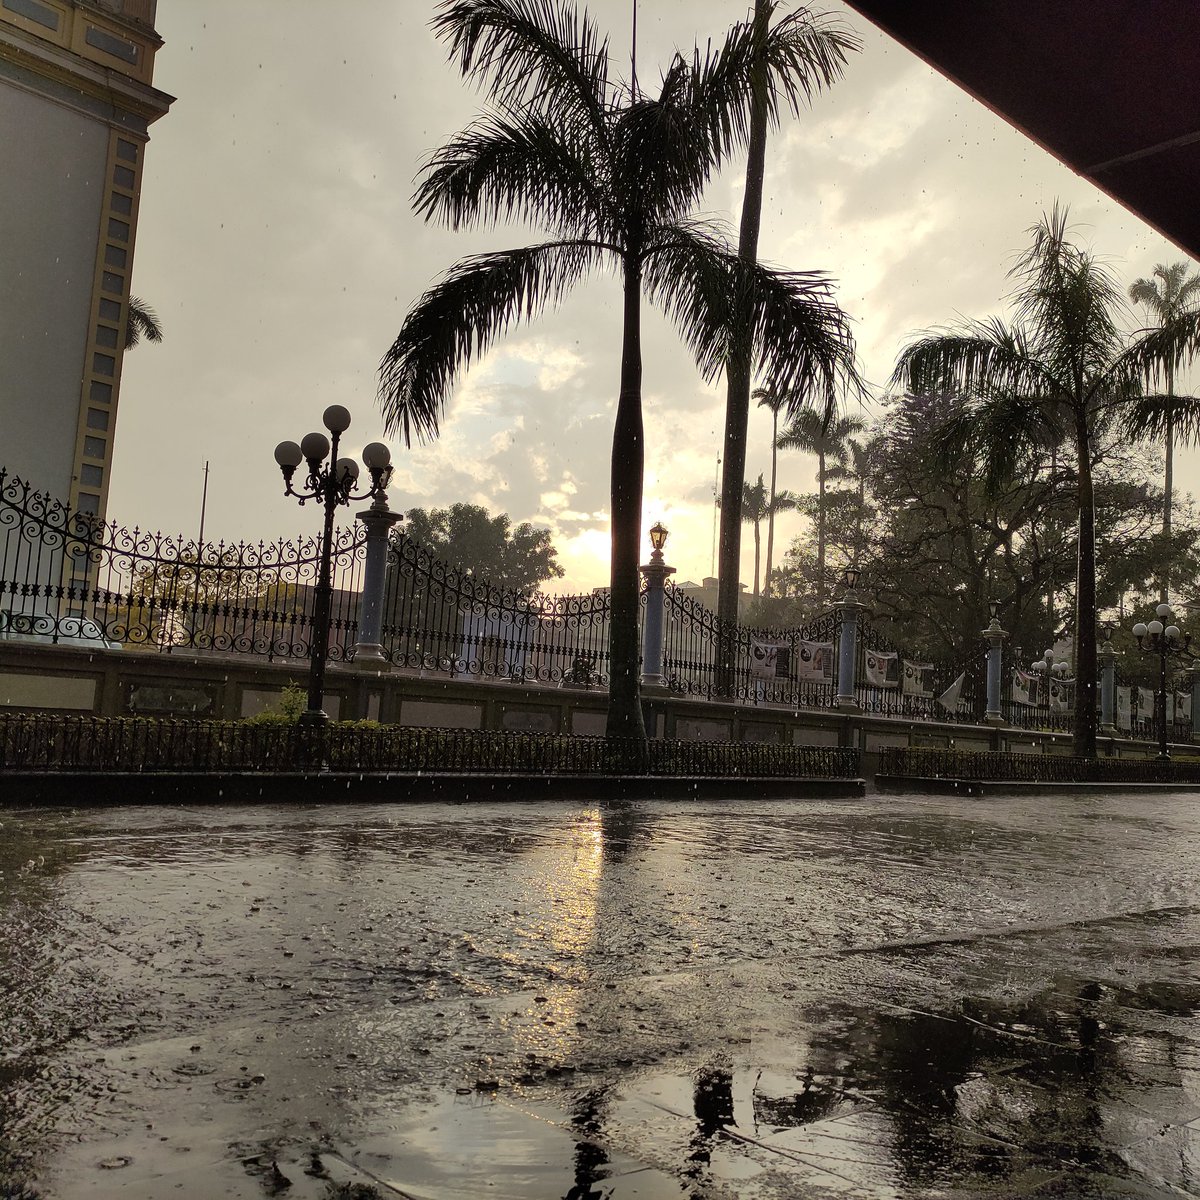 #Cordobeando ando y el sol, entre nubes y lluvia, observando...
#MainVision #PocoX3NFC #TiempoDeFotografía #PhotographyTime #CórdobaVer #Veracruz #México